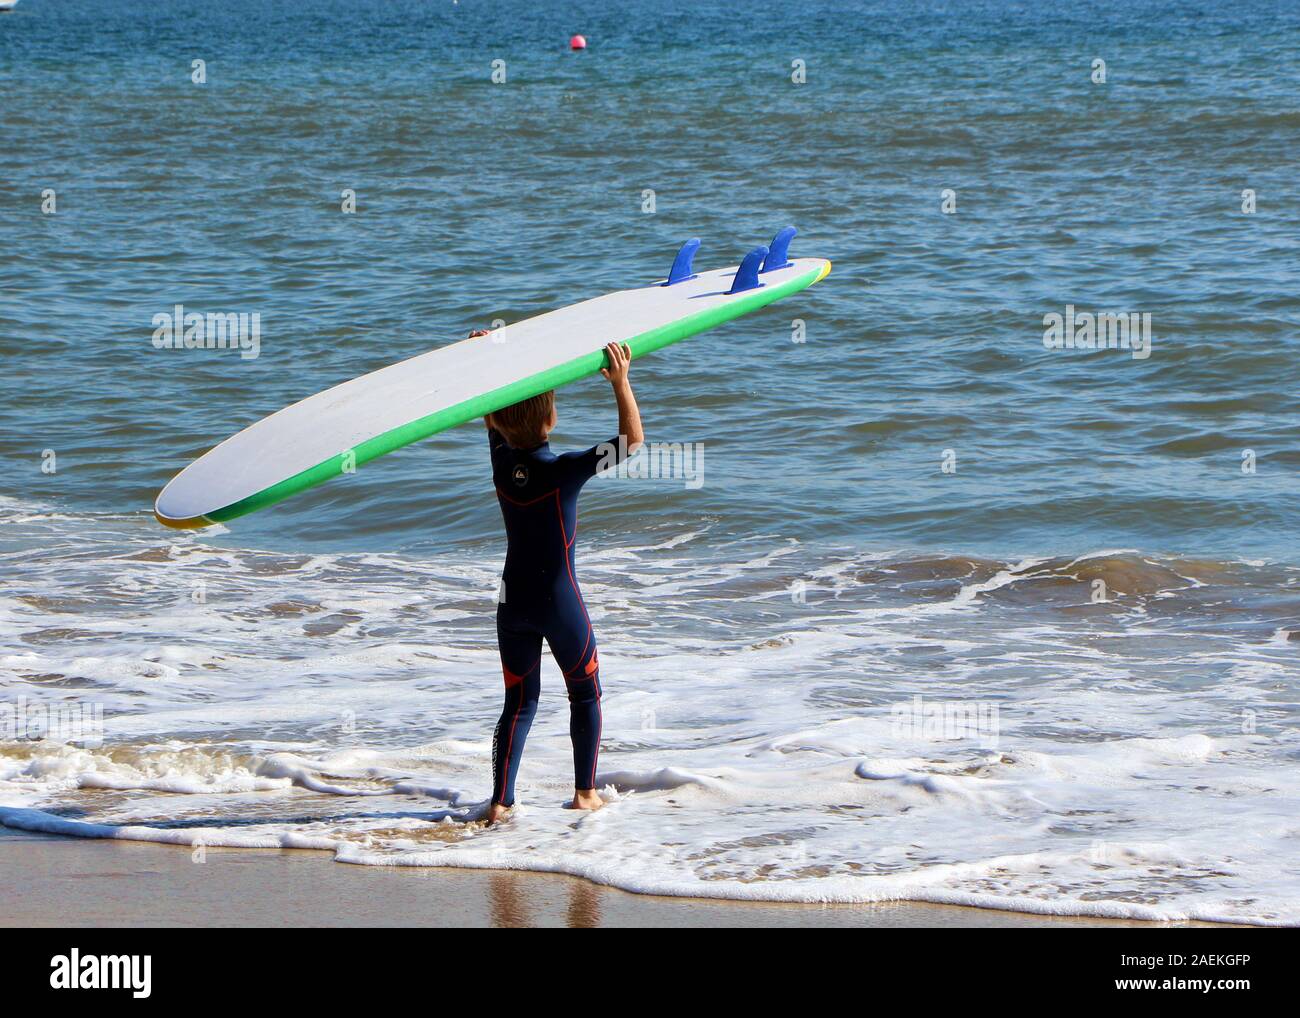 Un garçon va surfer sur la plage. Banque D'Images